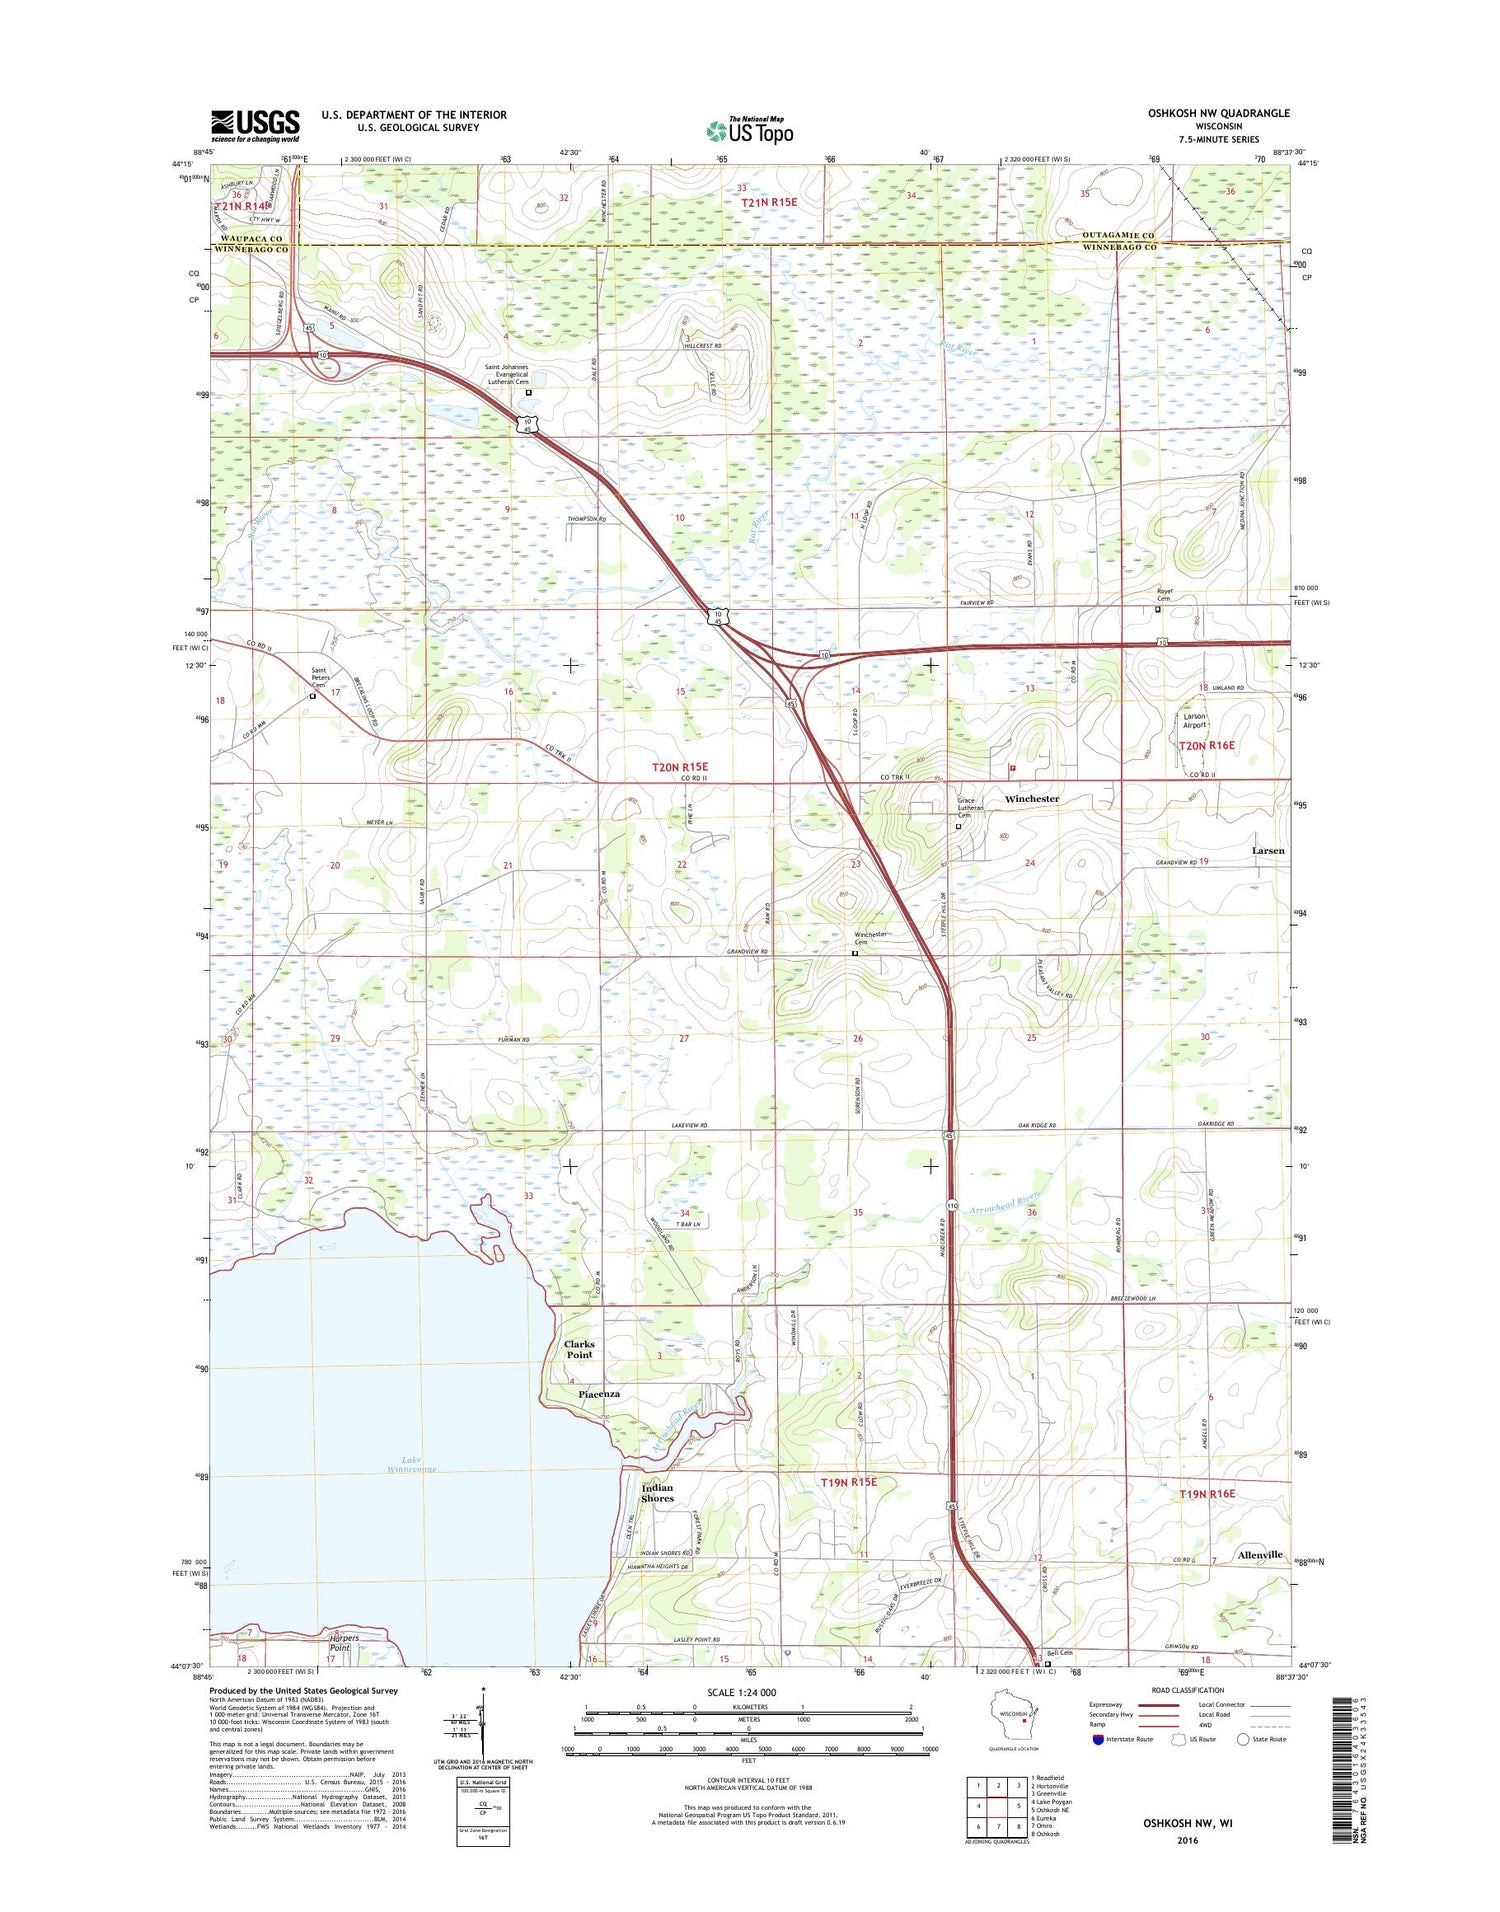 Oshkosh NW Wisconsin US Topo Map Image